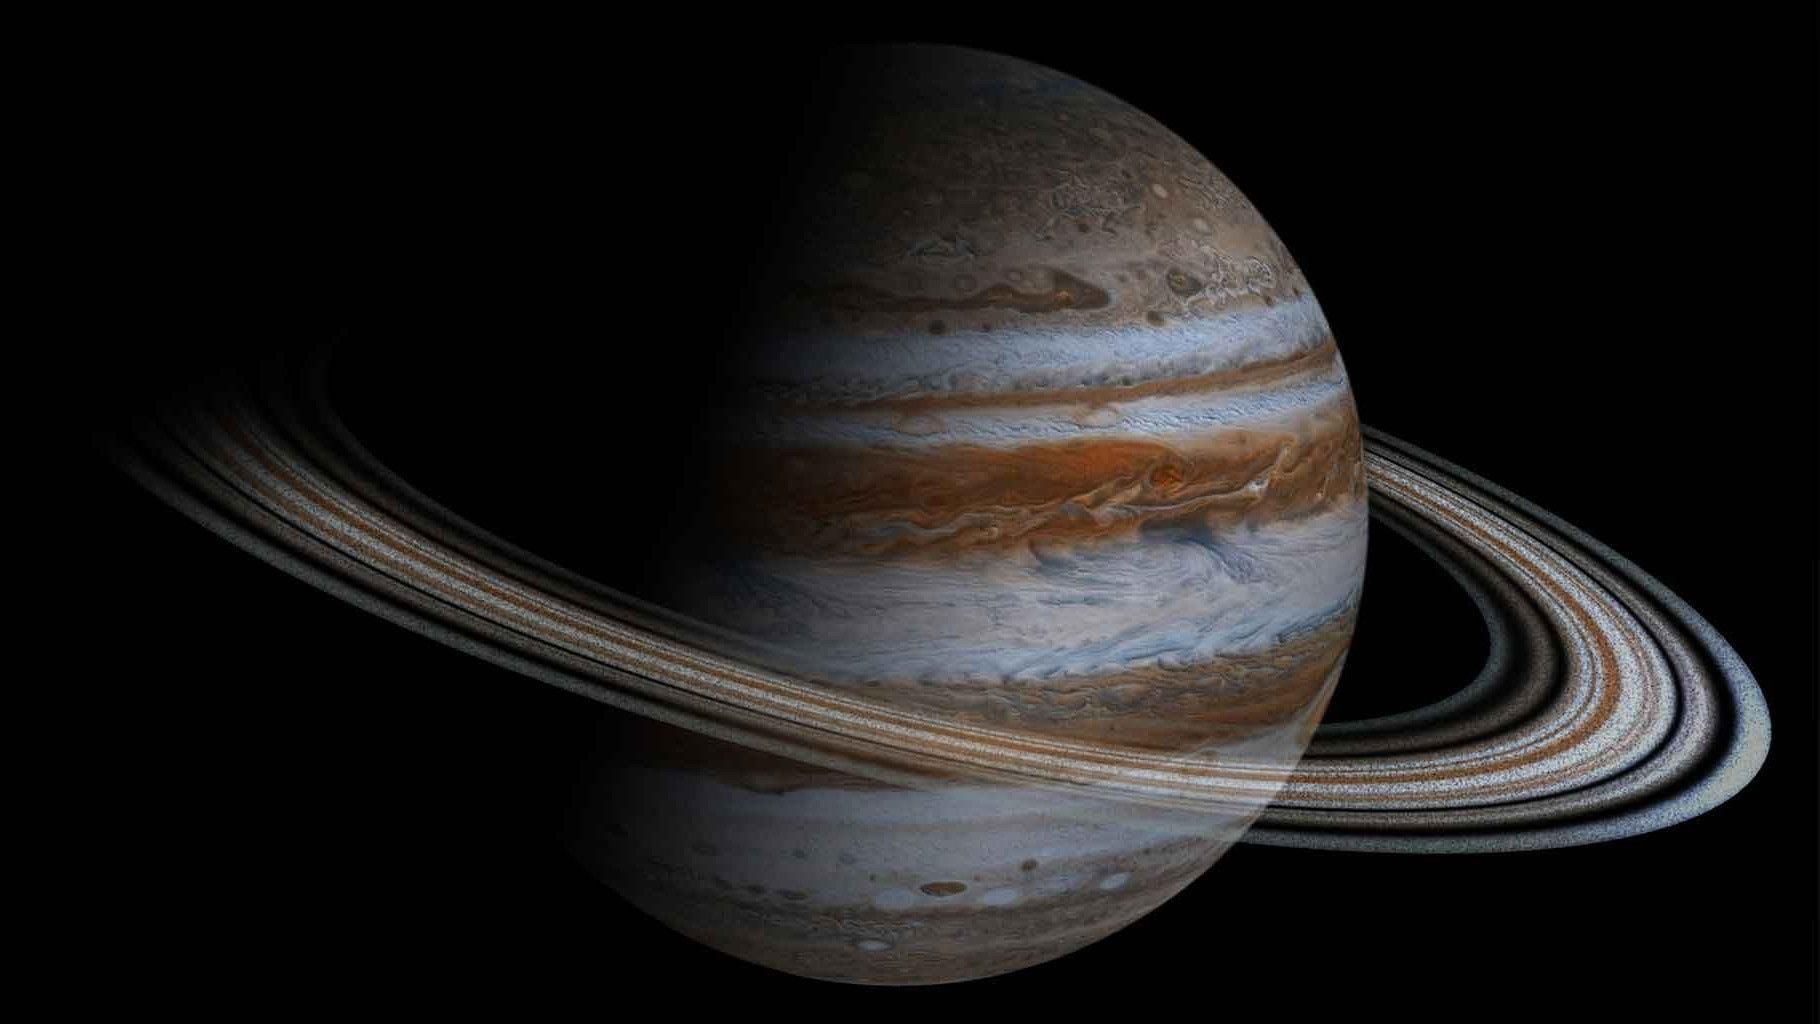 "Бездна Юпитера": космический корабль сделал невероятный снимок вихря на поверхности планеты